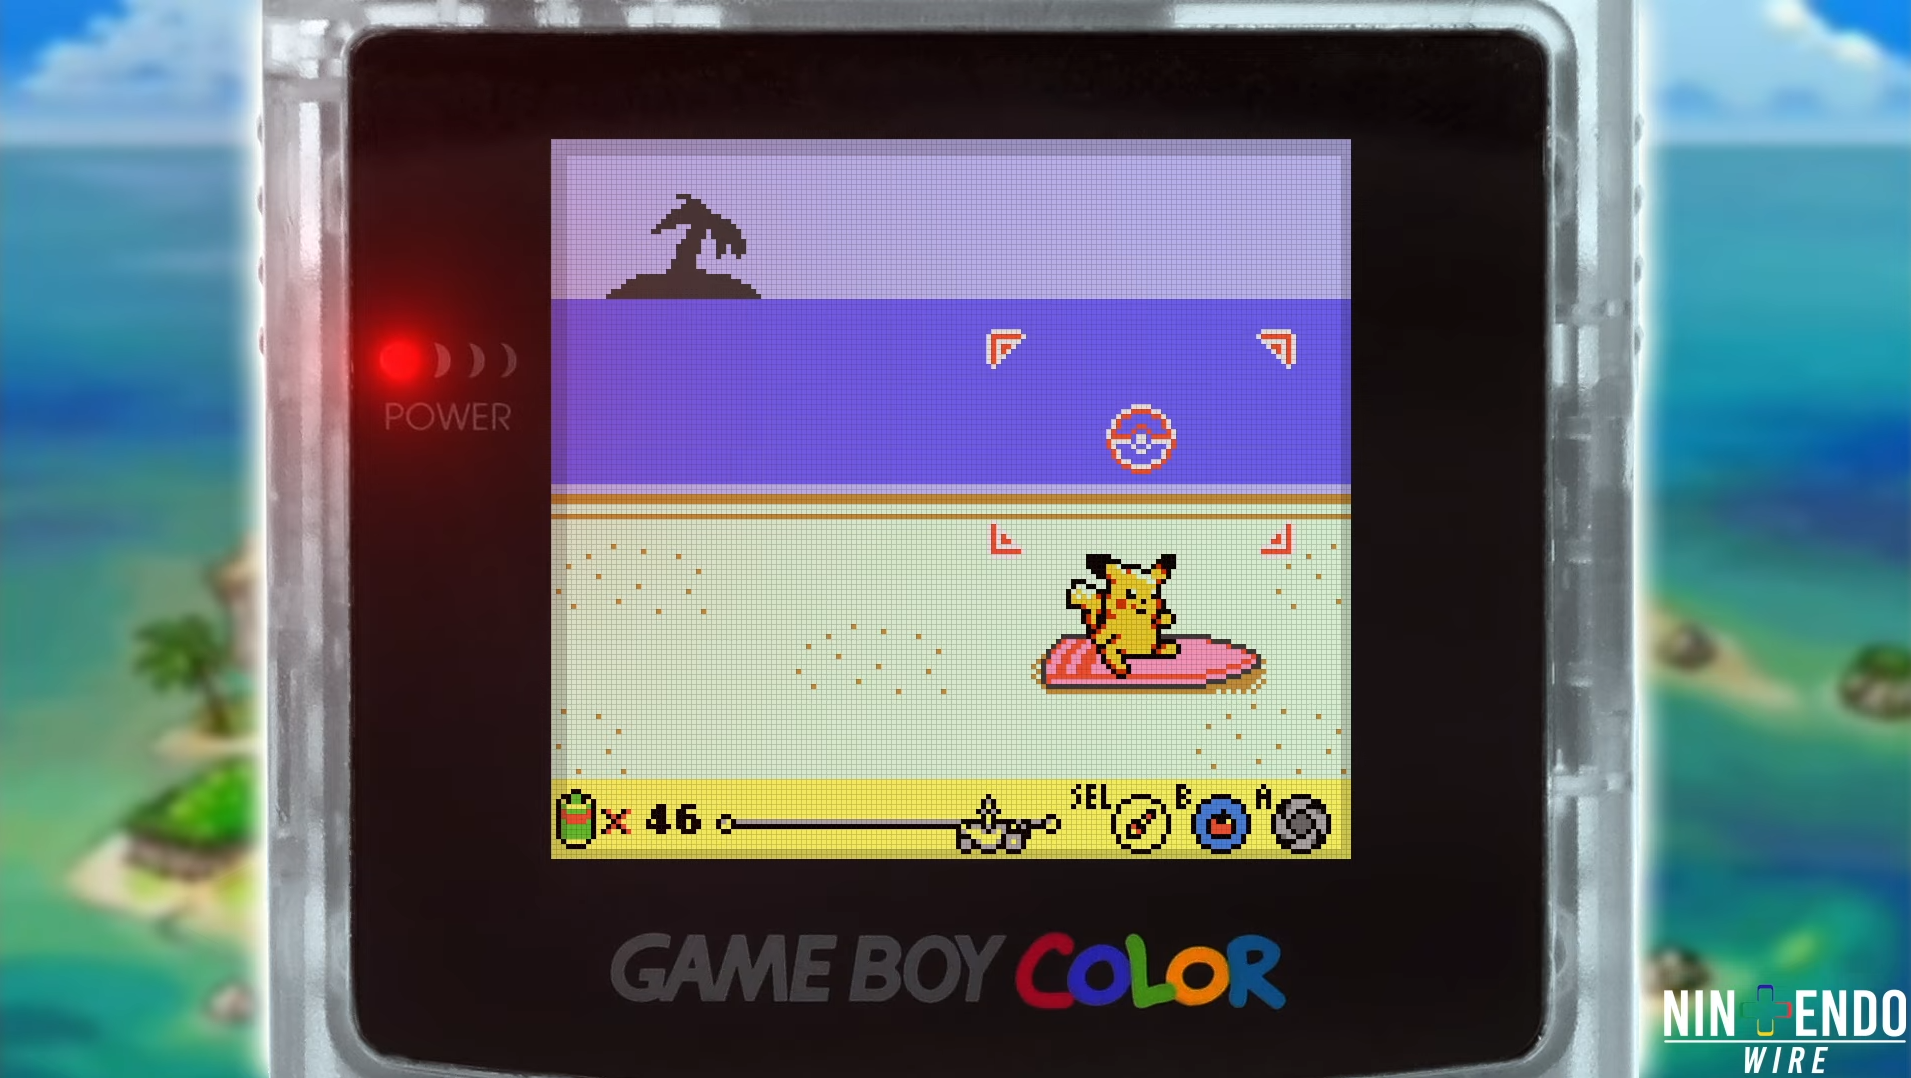 Fans reimagine Pokémon Snap on Game Boy Color - Dot Esports